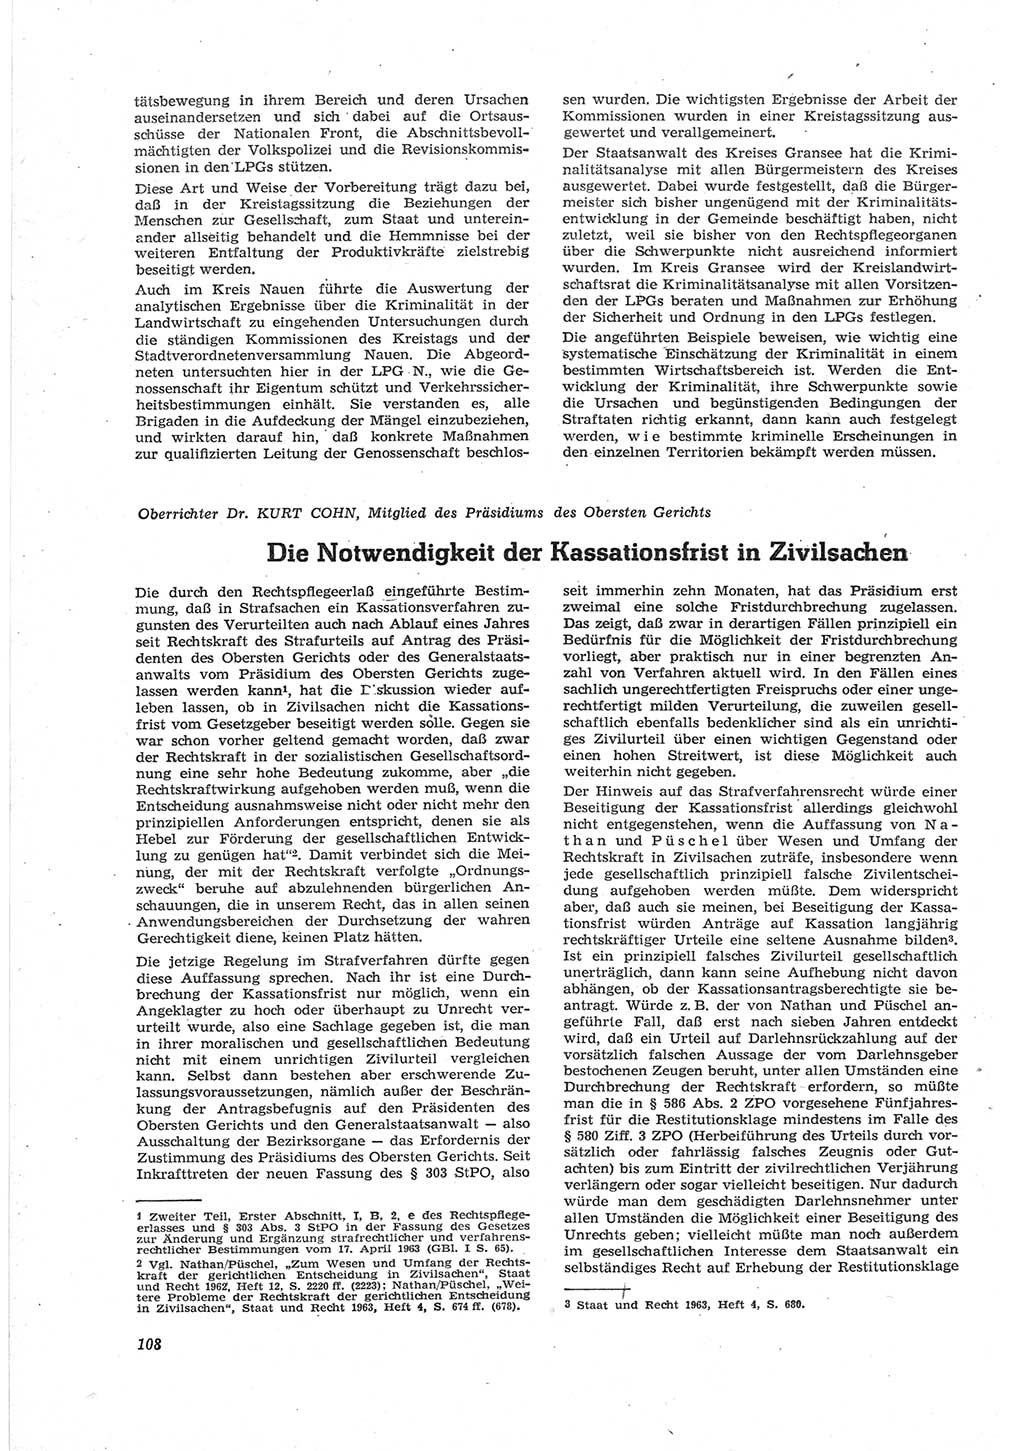 Neue Justiz (NJ), Zeitschrift für Recht und Rechtswissenschaft [Deutsche Demokratische Republik (DDR)], 18. Jahrgang 1964, Seite 108 (NJ DDR 1964, S. 108)